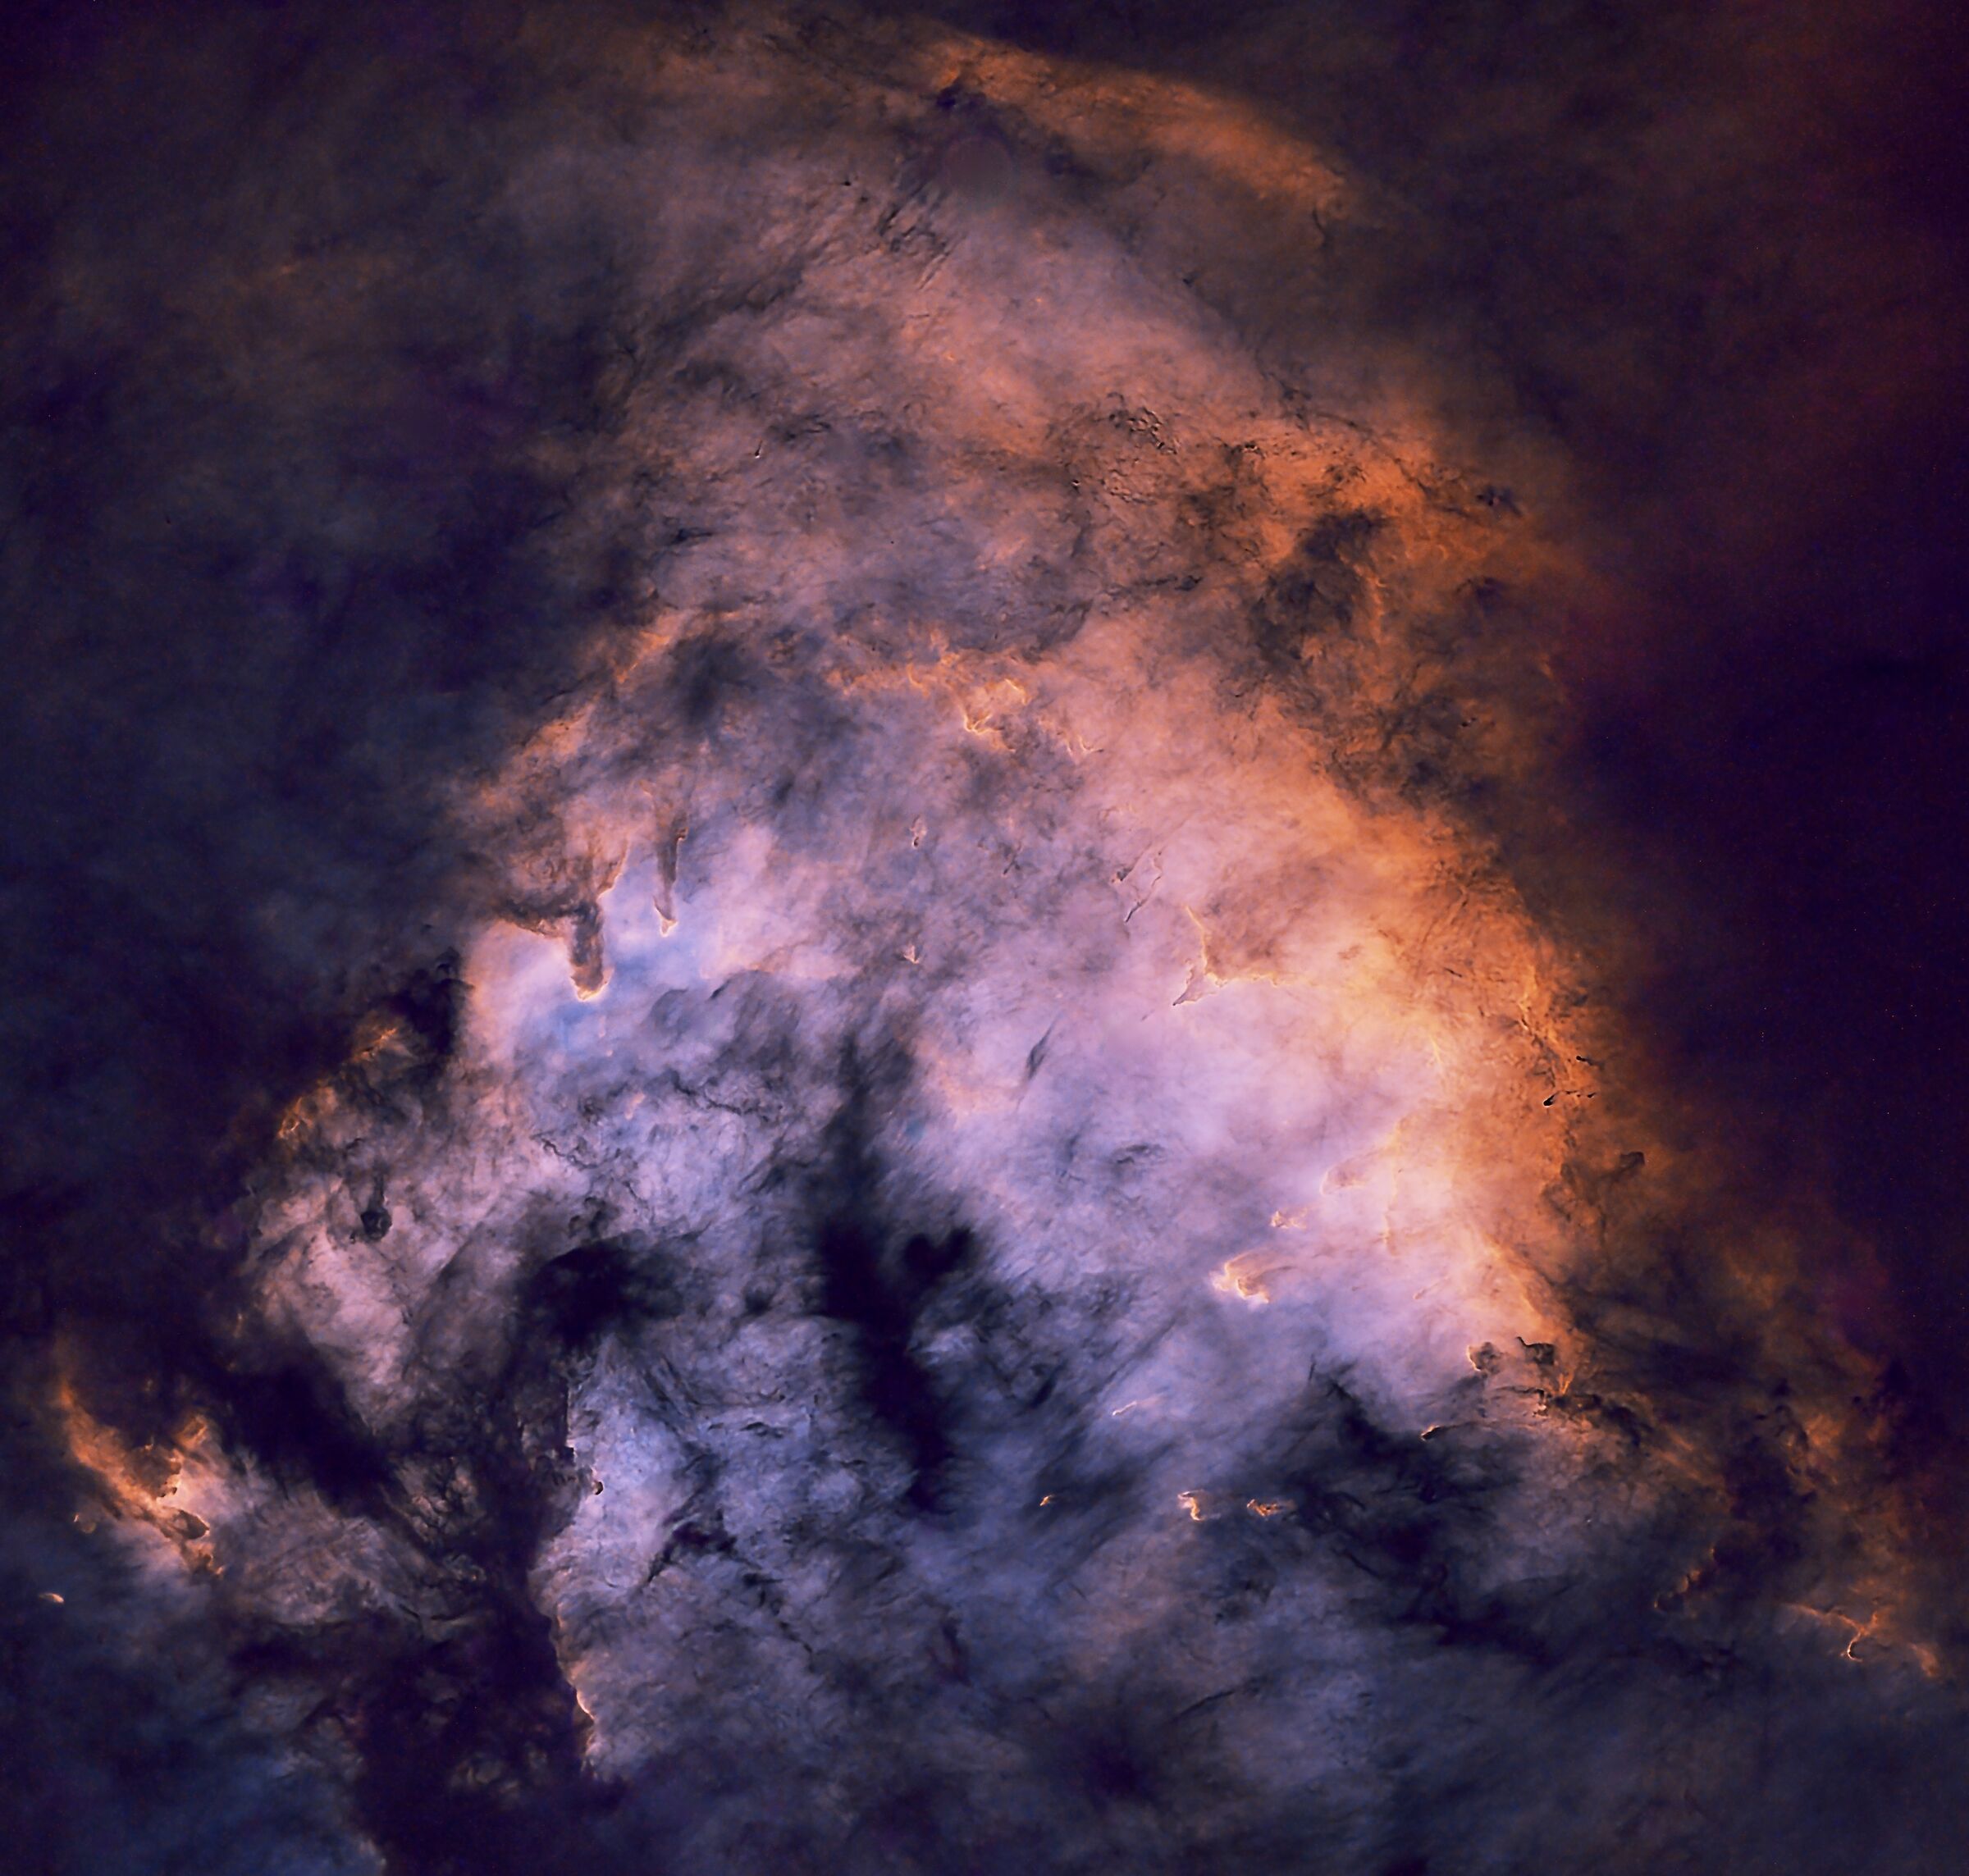 NGC7822 Emission nebula in Cepheus...